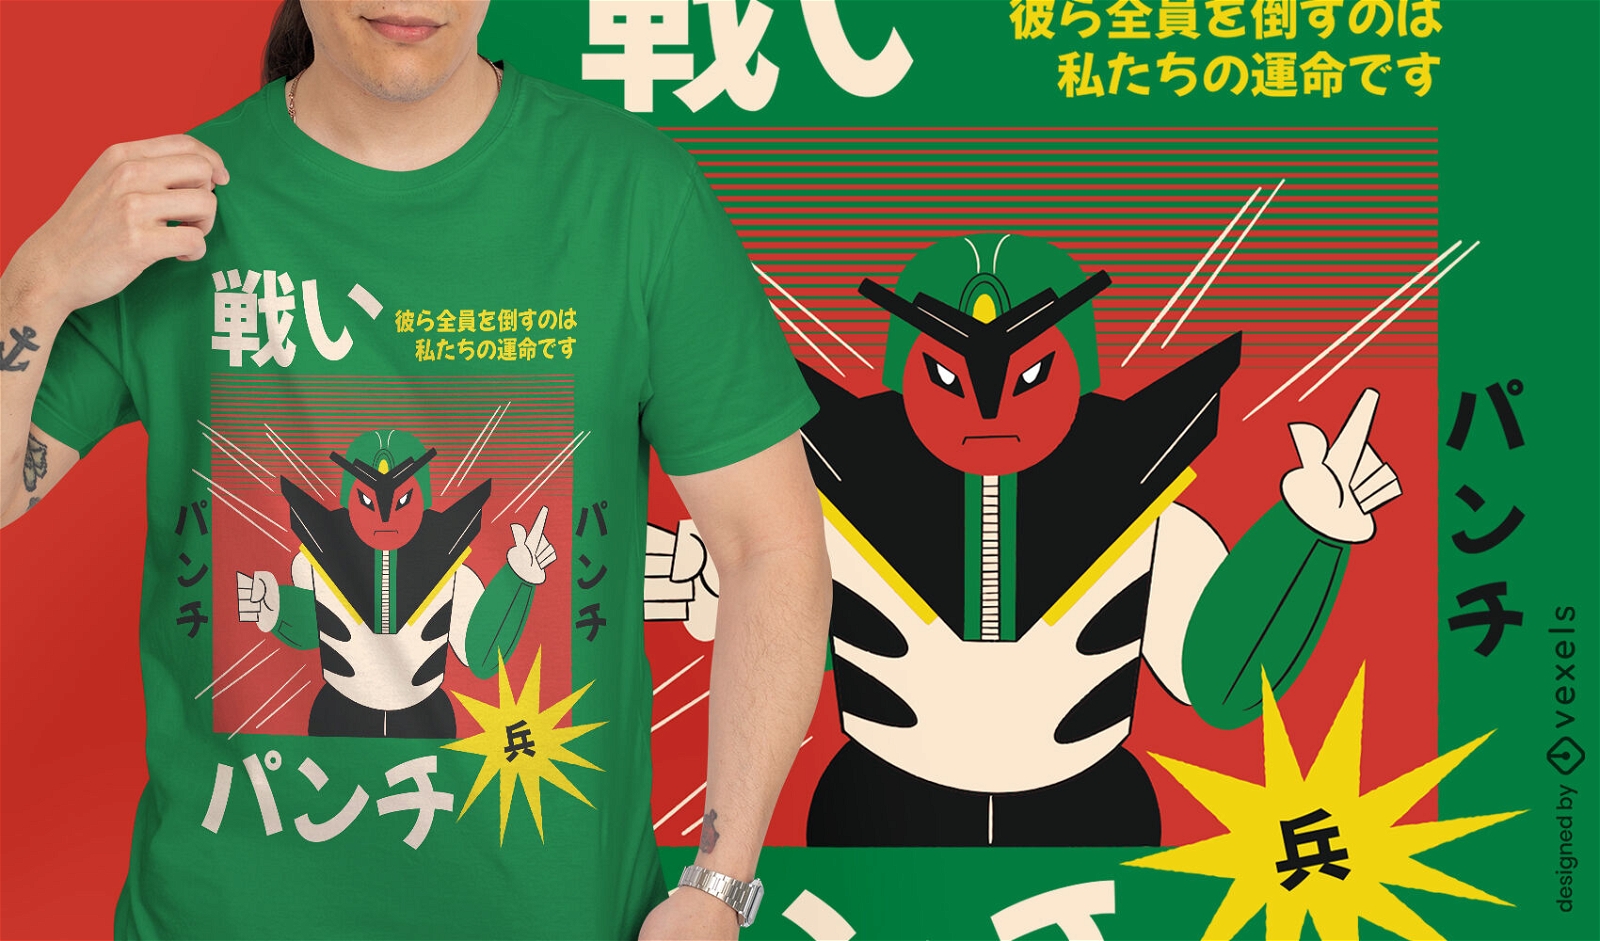 Dise?o de camiseta retro de personaje robot japon?s.